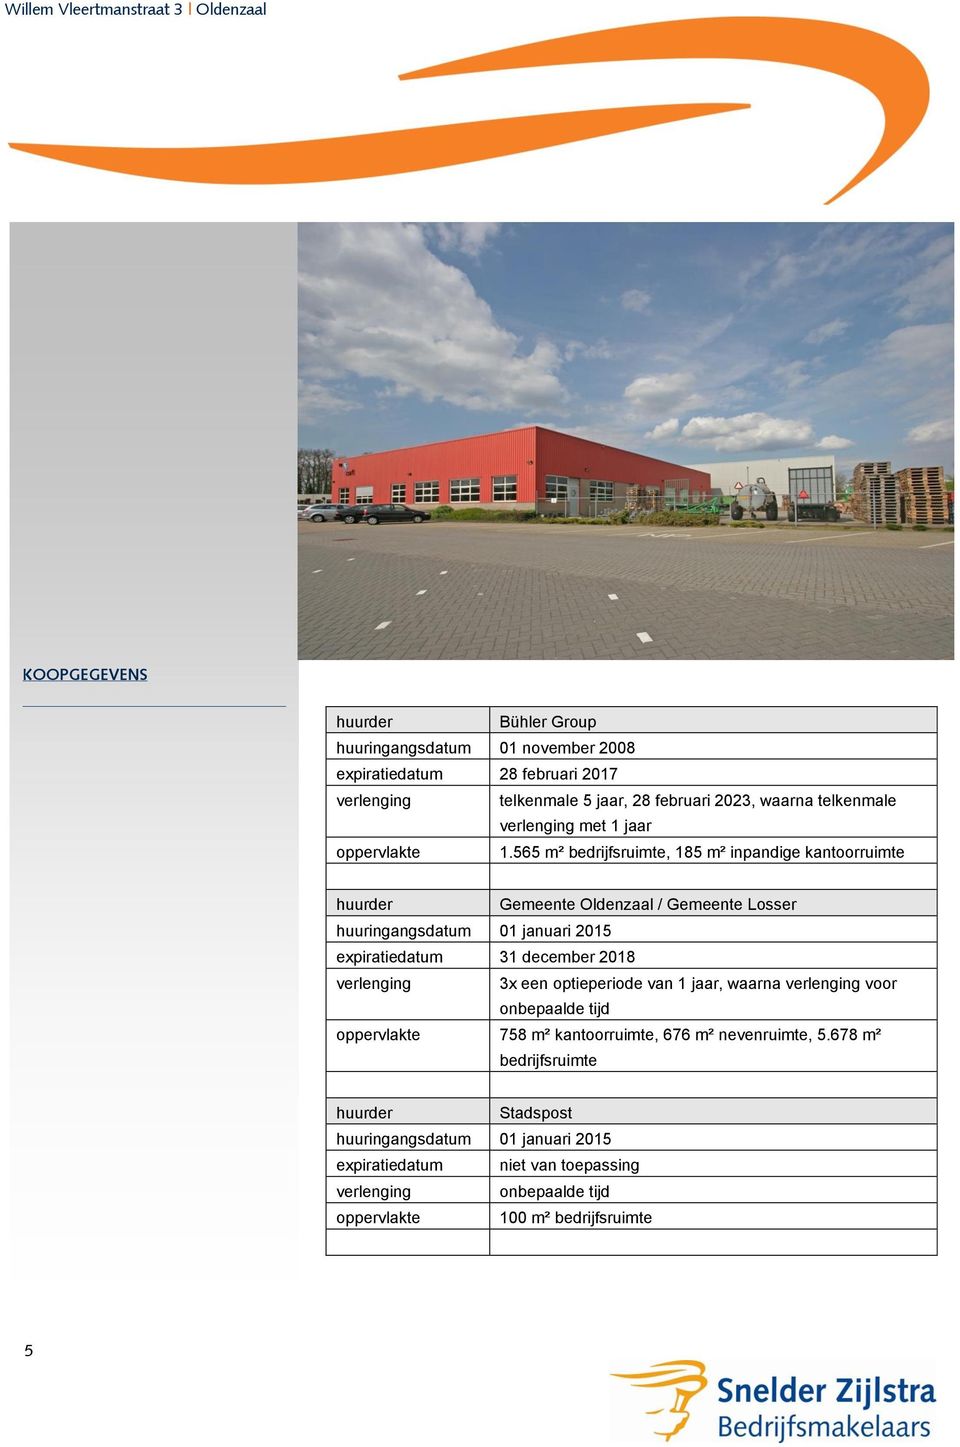 565 m² bedrijfsruimte, 185 m² inpandige kantoorruimte huurder Gemeente Oldenzaal / Gemeente Losser huuringangsdatum 01 januari 2015 expiratiedatum 31 december 2018 verlenging 3x